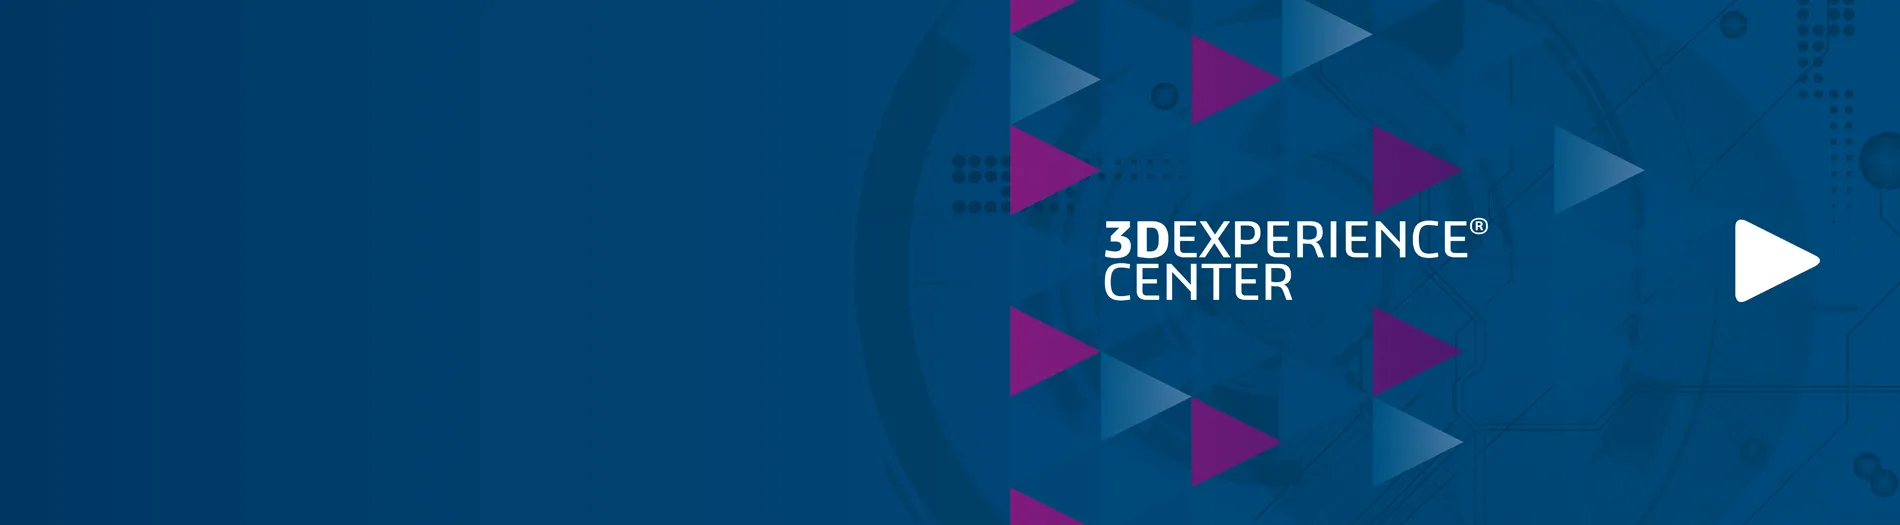 3DExperience-Center Hamburg > Dassault Systèmes